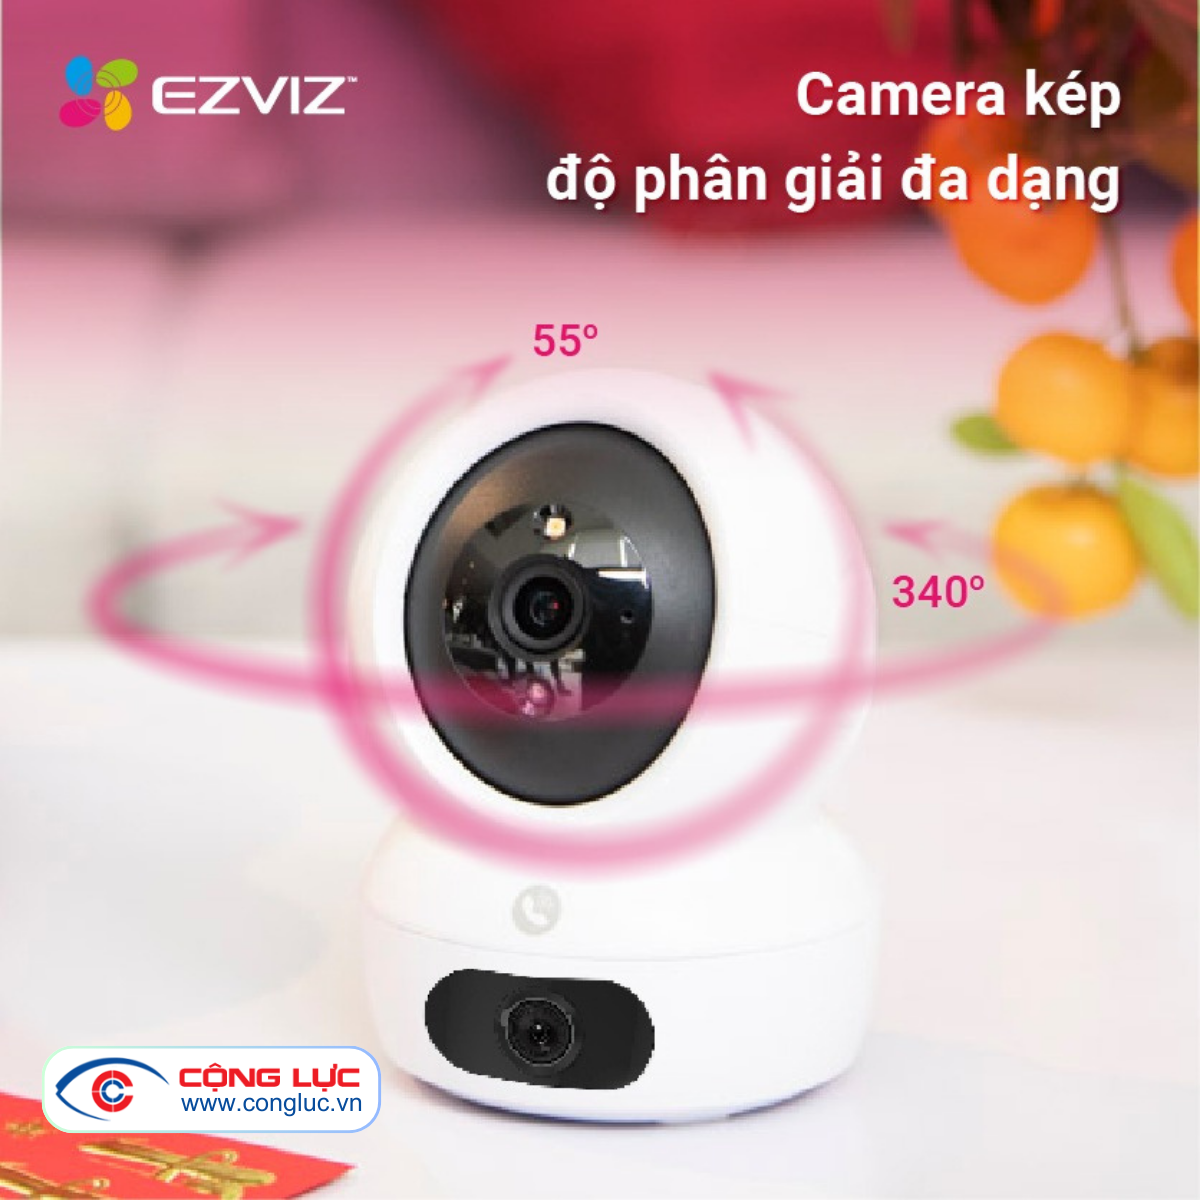 bán camera wifi 2 mắt ezviz h7c 8mp chính hãng giá rẻ